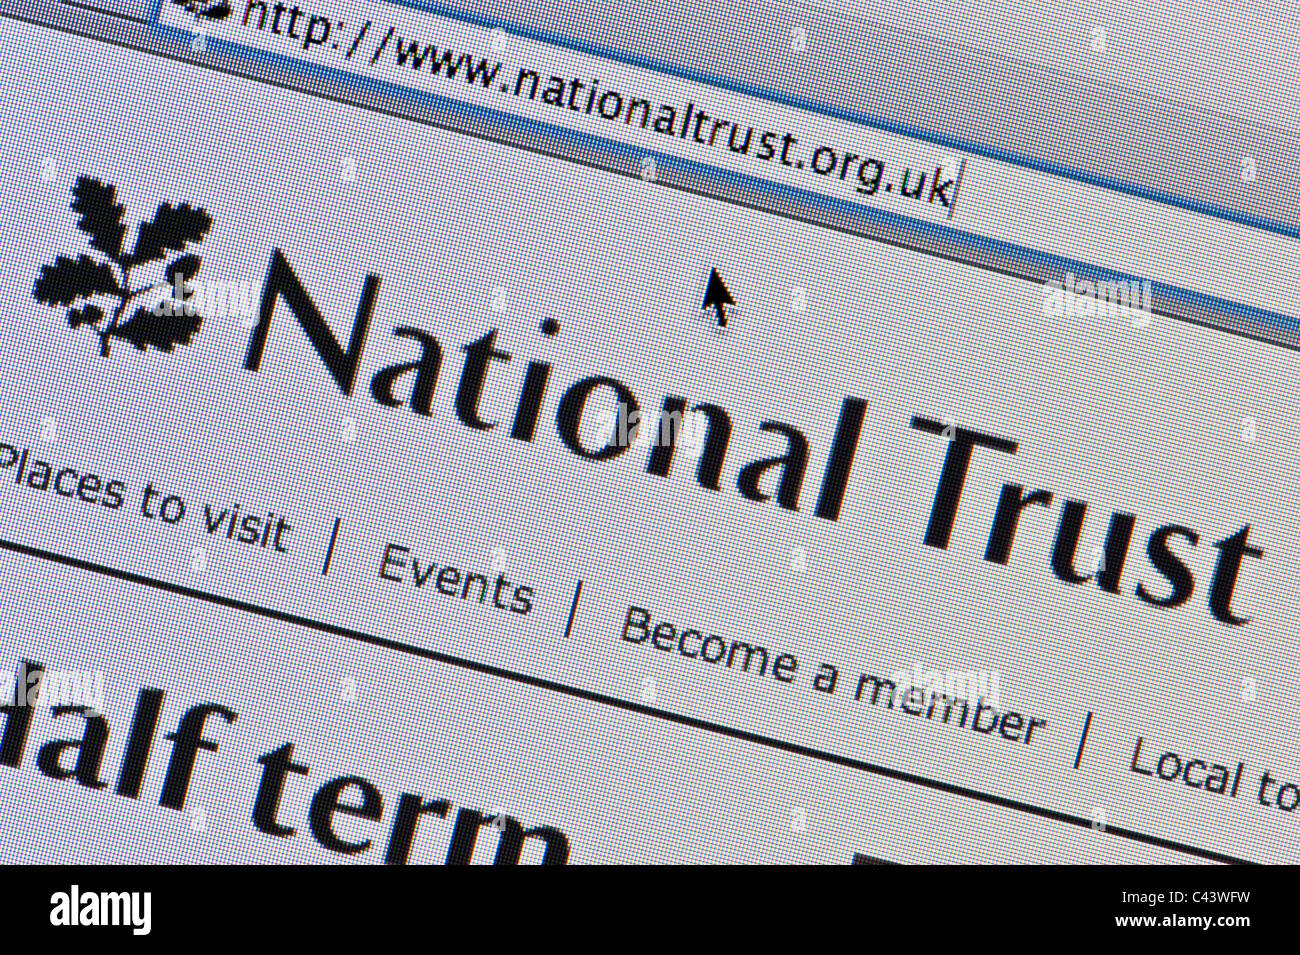 Cerca del logotipo de confianza nacional tal como se ve en su sitio web. (Sólo para uso editorial: -print, televisión, e-book editorial y sitio web). Foto de stock